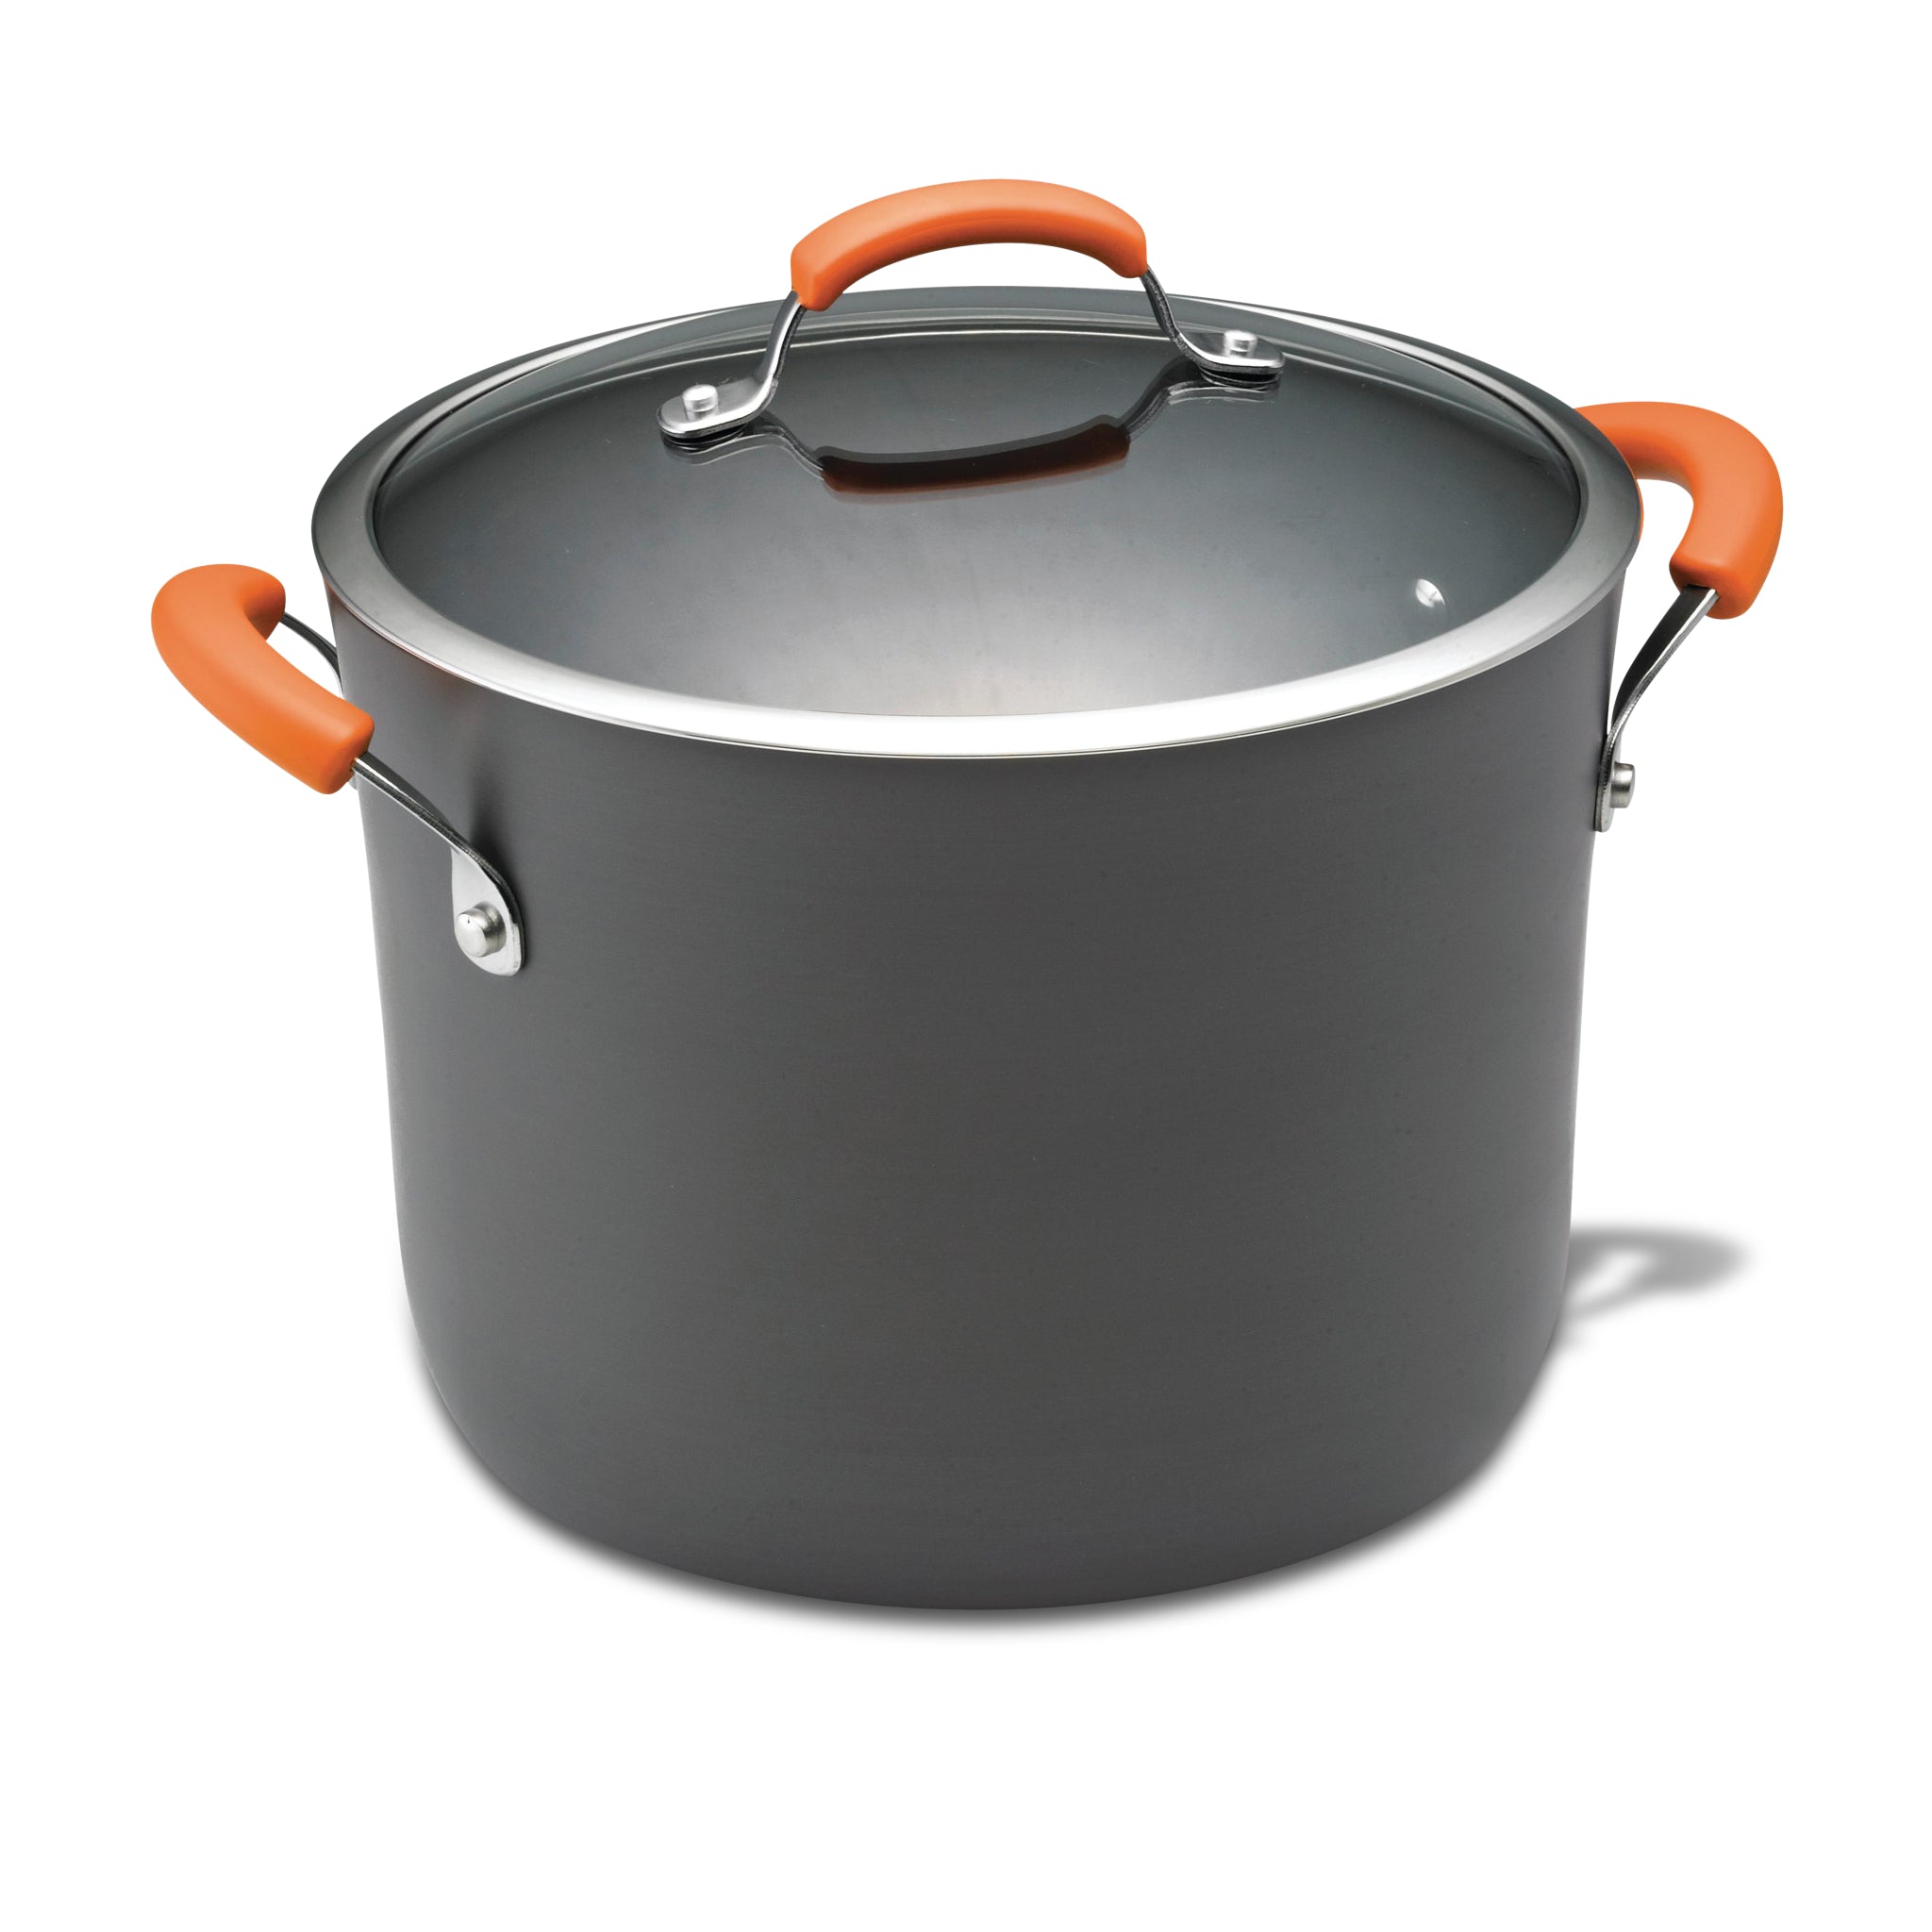 Rachael Ray Enamel on Steel 12-Quart Covered Stock Pot Orange 59025 - Best  Buy